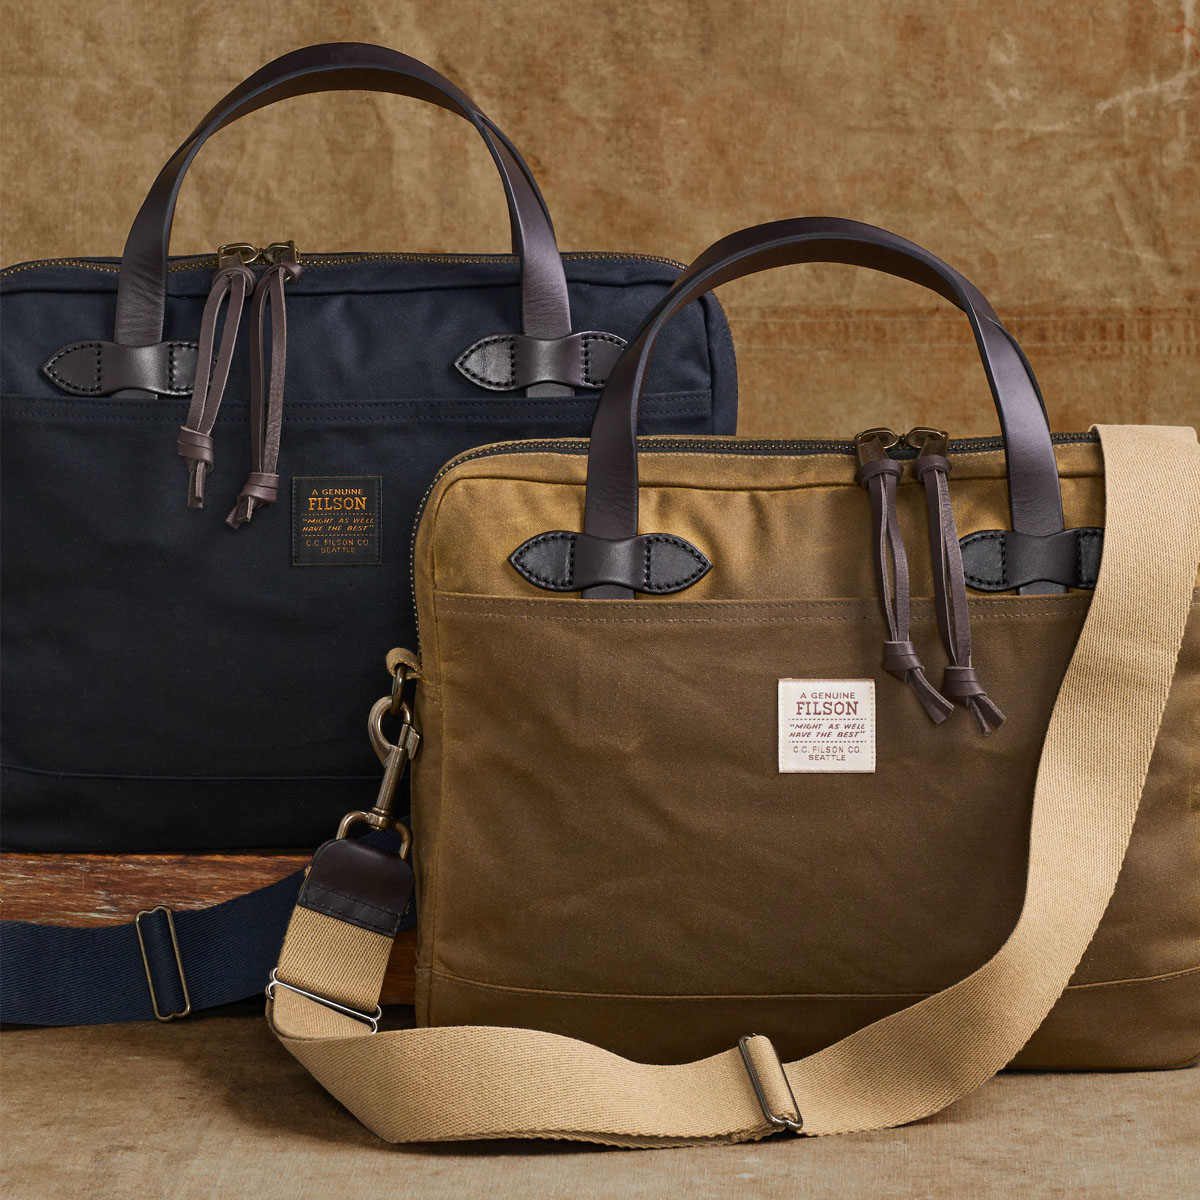 Filson Tin Cloth Compact Briefcase Navy, eine stromlinienförmige Aktentasche mit traditionellen Materialien und modernem Design